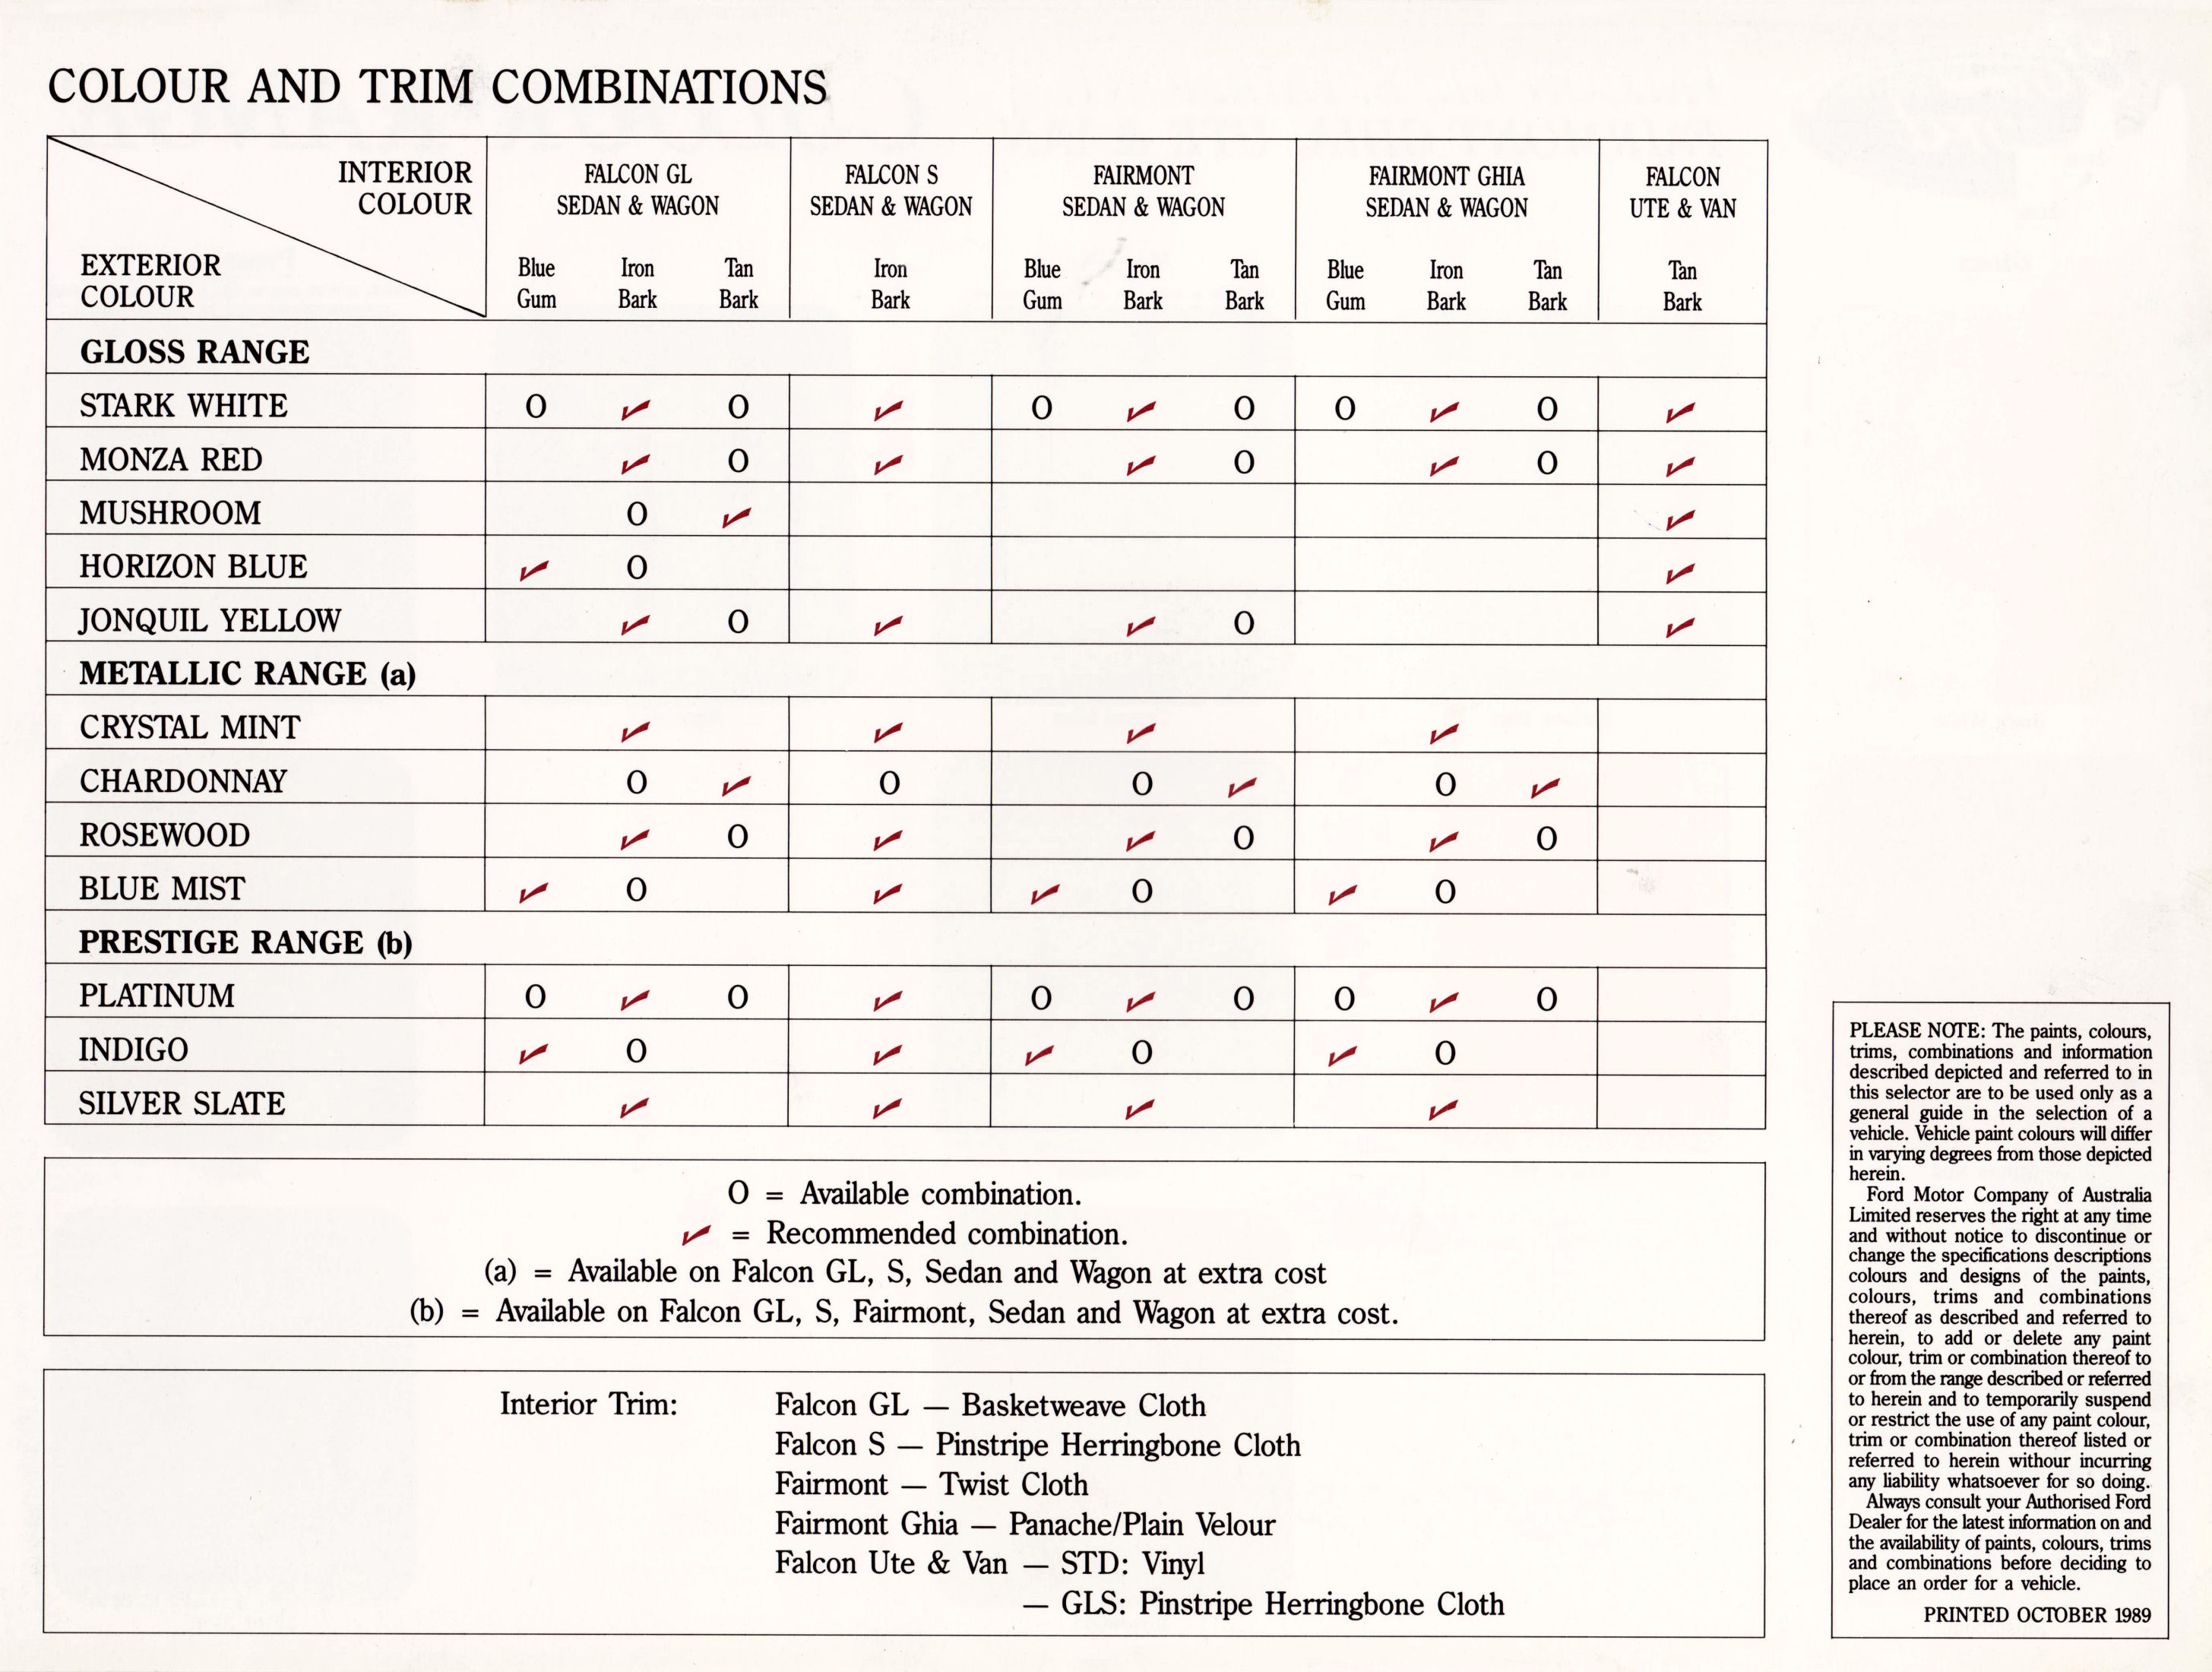 1989 Ford EA Falcon Colour Chart (Aus)-01 (2).jpg-2023-8-14 8.38.0